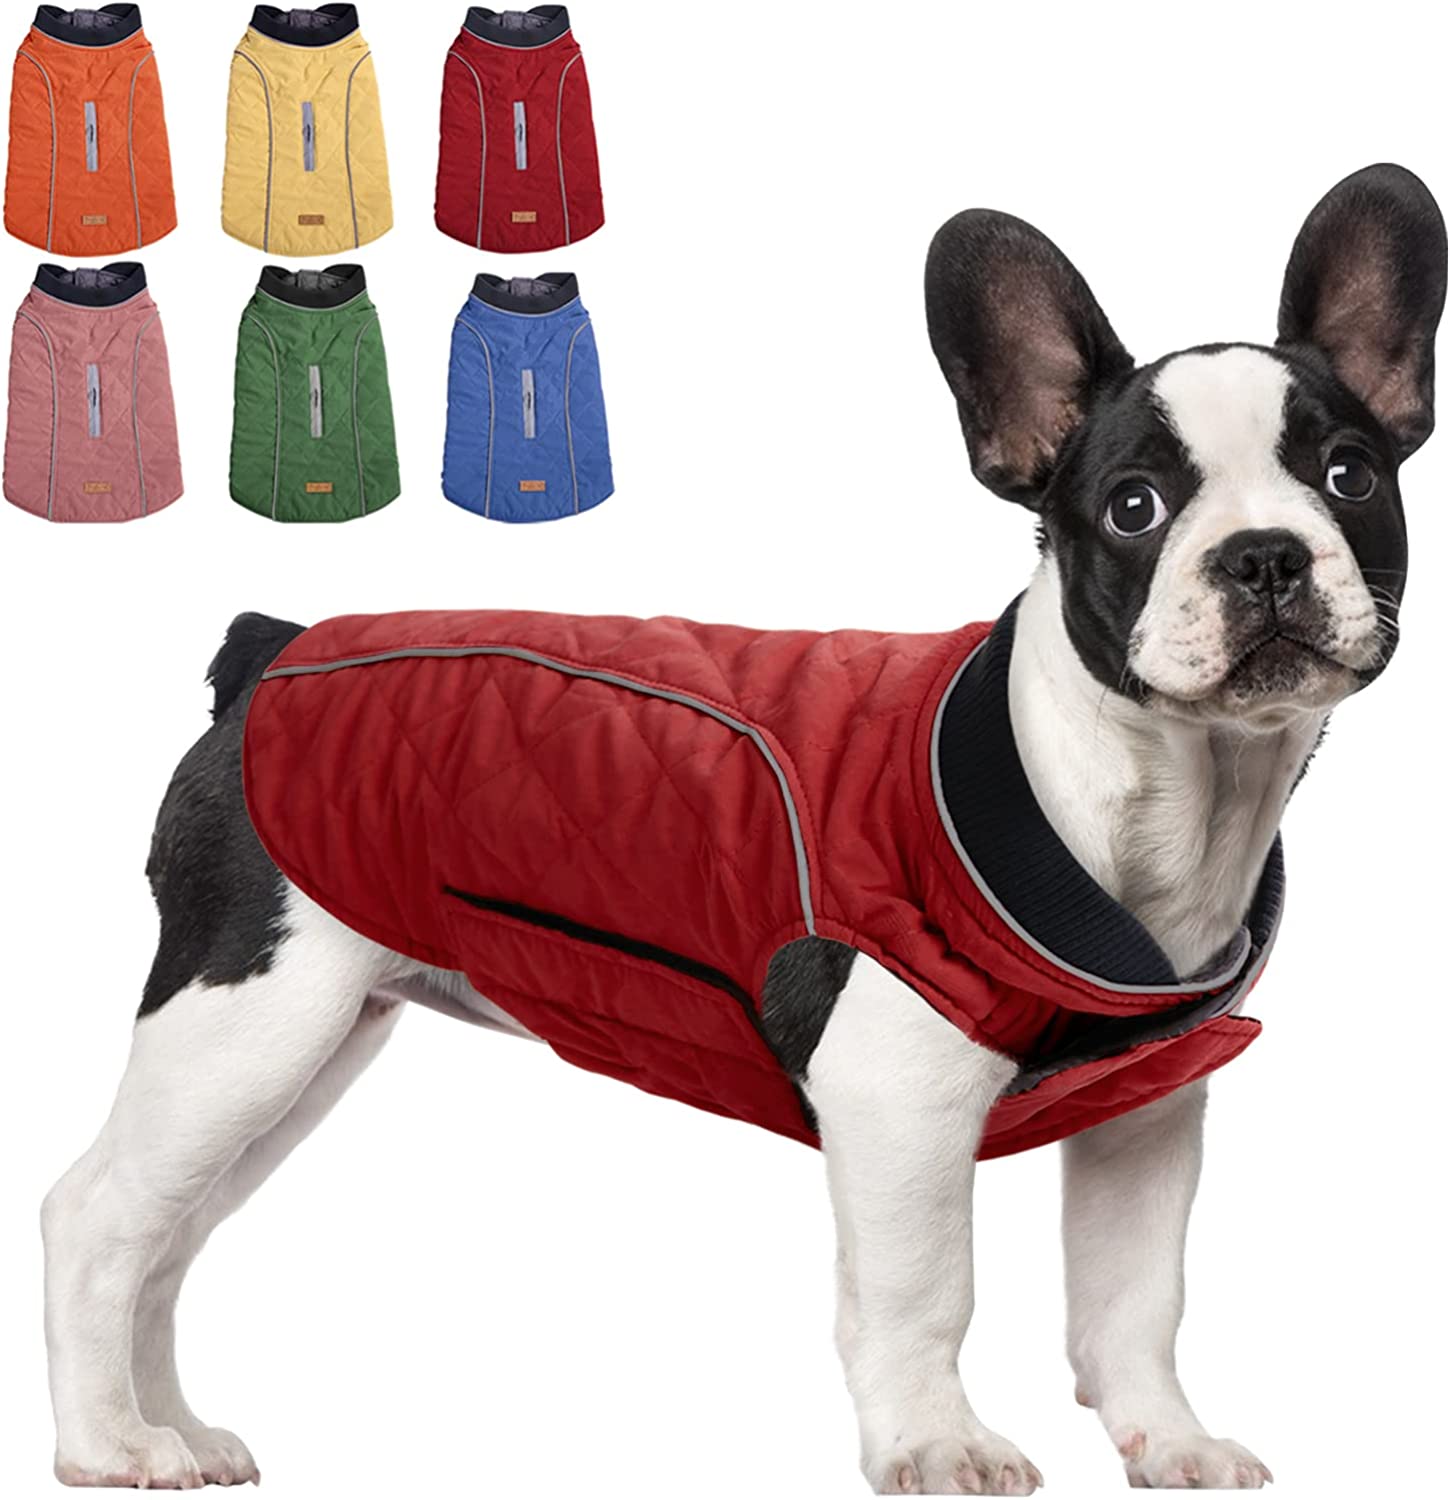 سگ ها می توانند در روزهای برفی و روزهای بارانی آزادانه سفر کنند و با پوشیدن جلیقه پنبه ای سگ SUNFURA ضخیم، بادوام و سبک، خشک بمانند. 